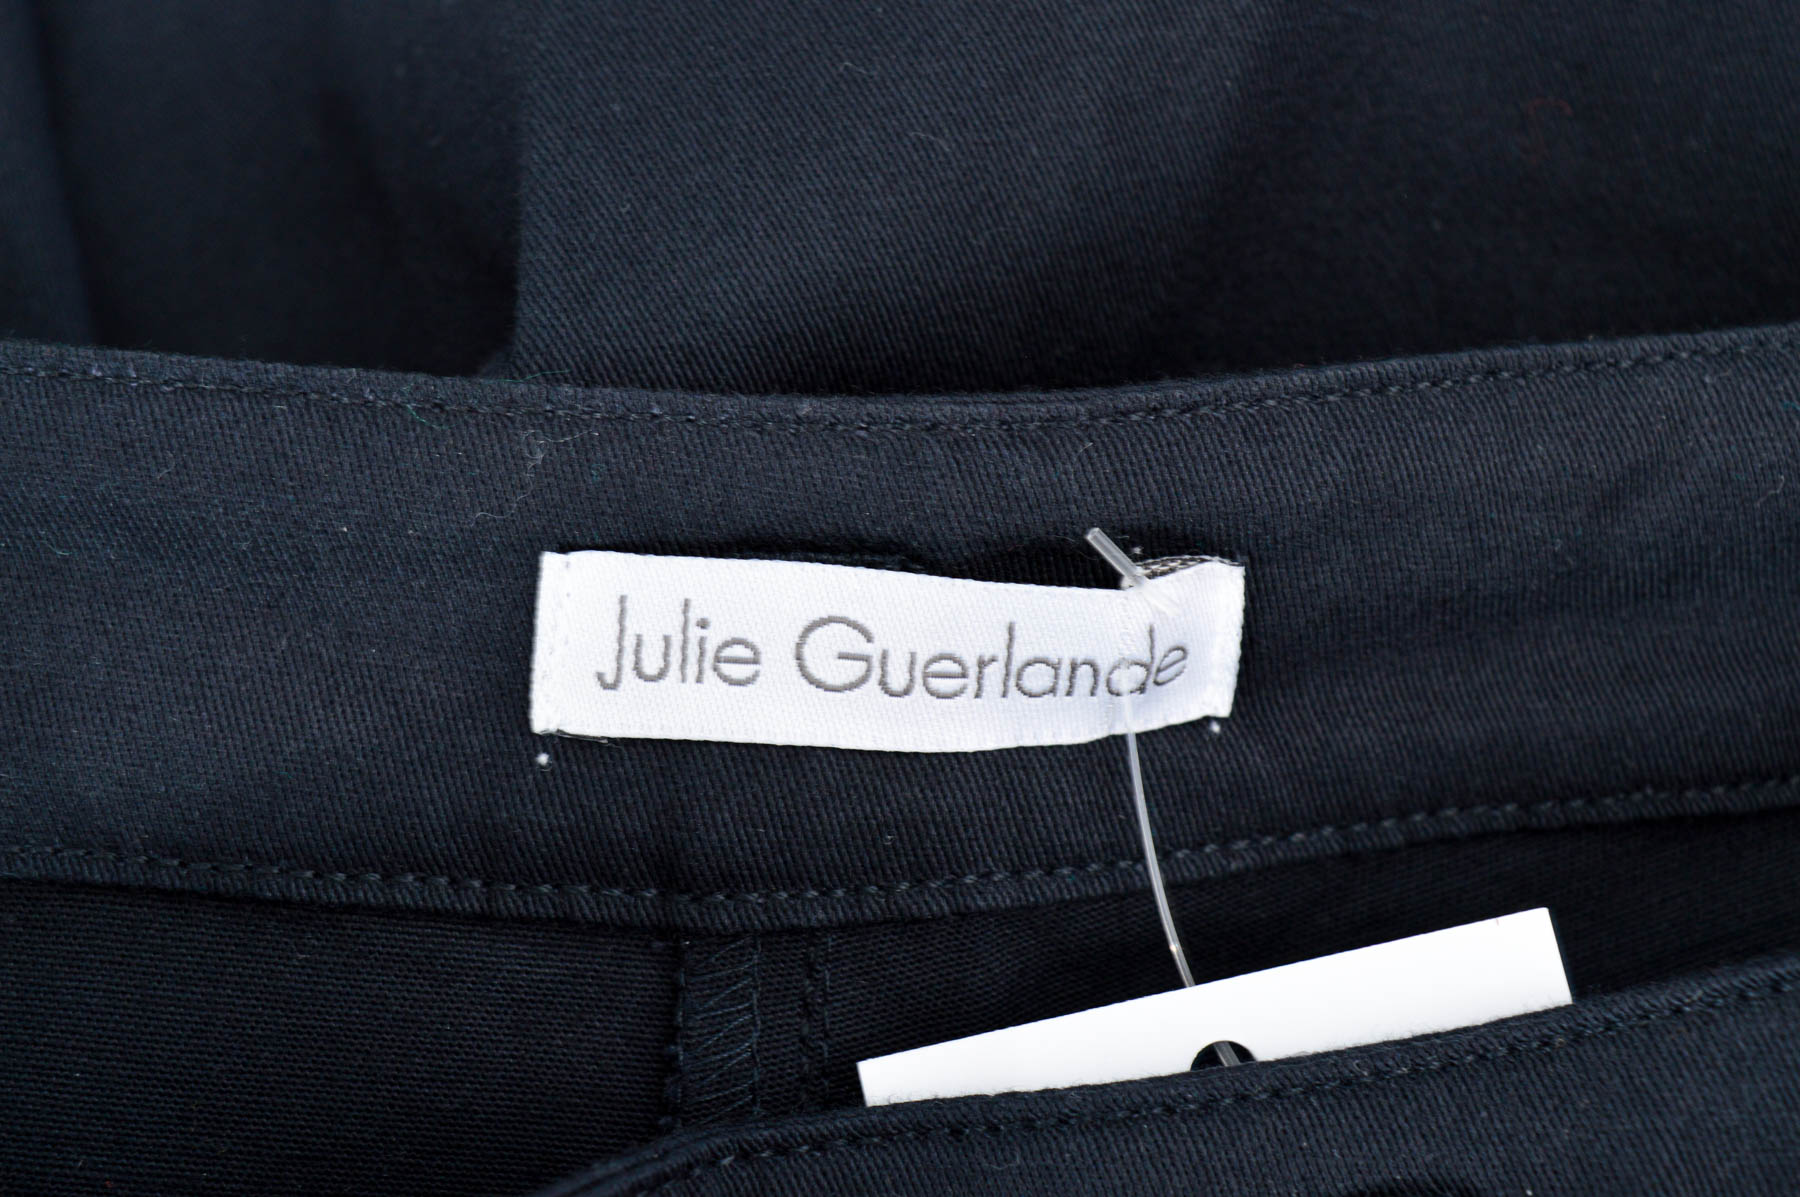 Female shorts - Julie Guerlande - 2